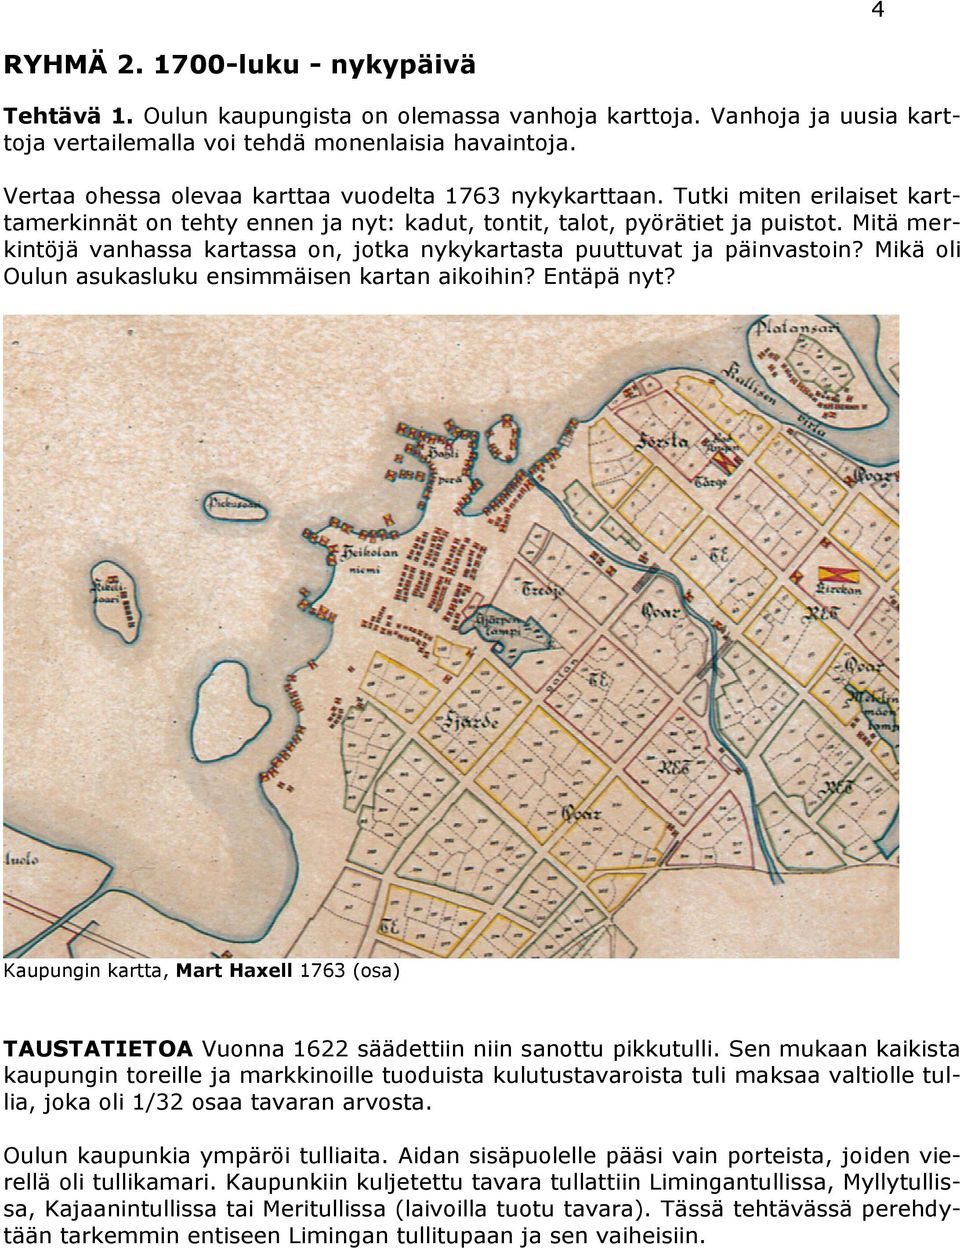 Mitä merkintöjä vanhassa kartassa on, jotka nykykartasta puuttuvat ja päinvastoin? Mikä oli Oulun asukasluku ensimmäisen kartan aikoihin? Entäpä nyt?